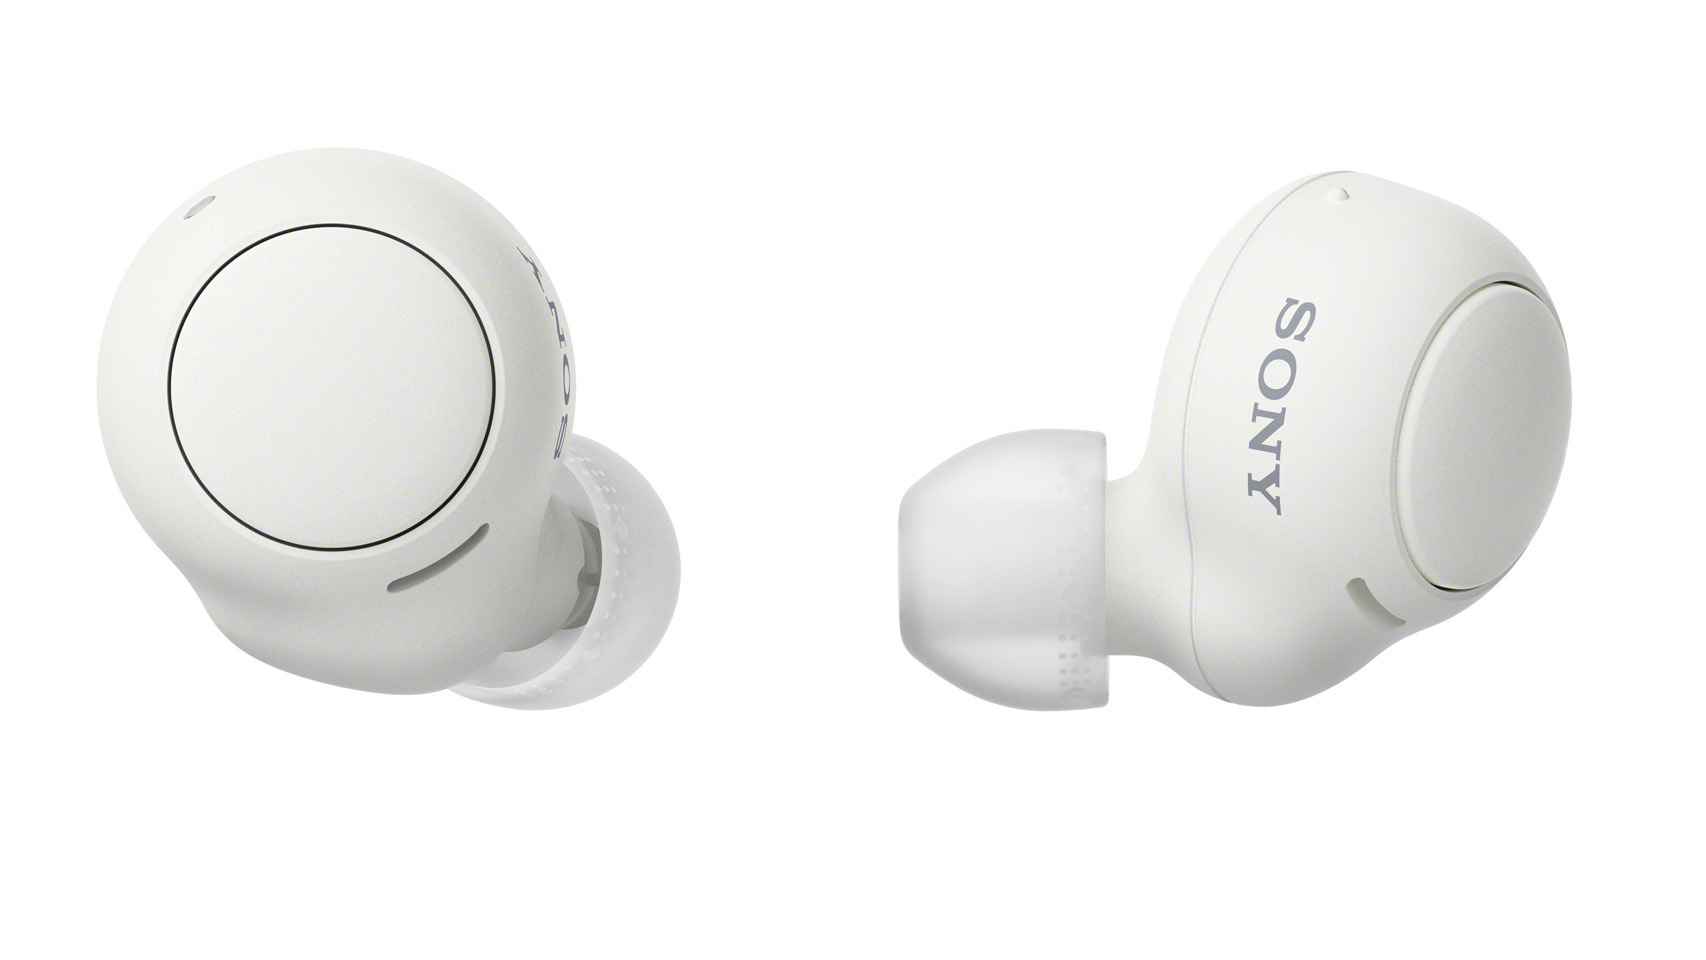 Así son los nuevos auriculares inalámbricos baratos de Sony